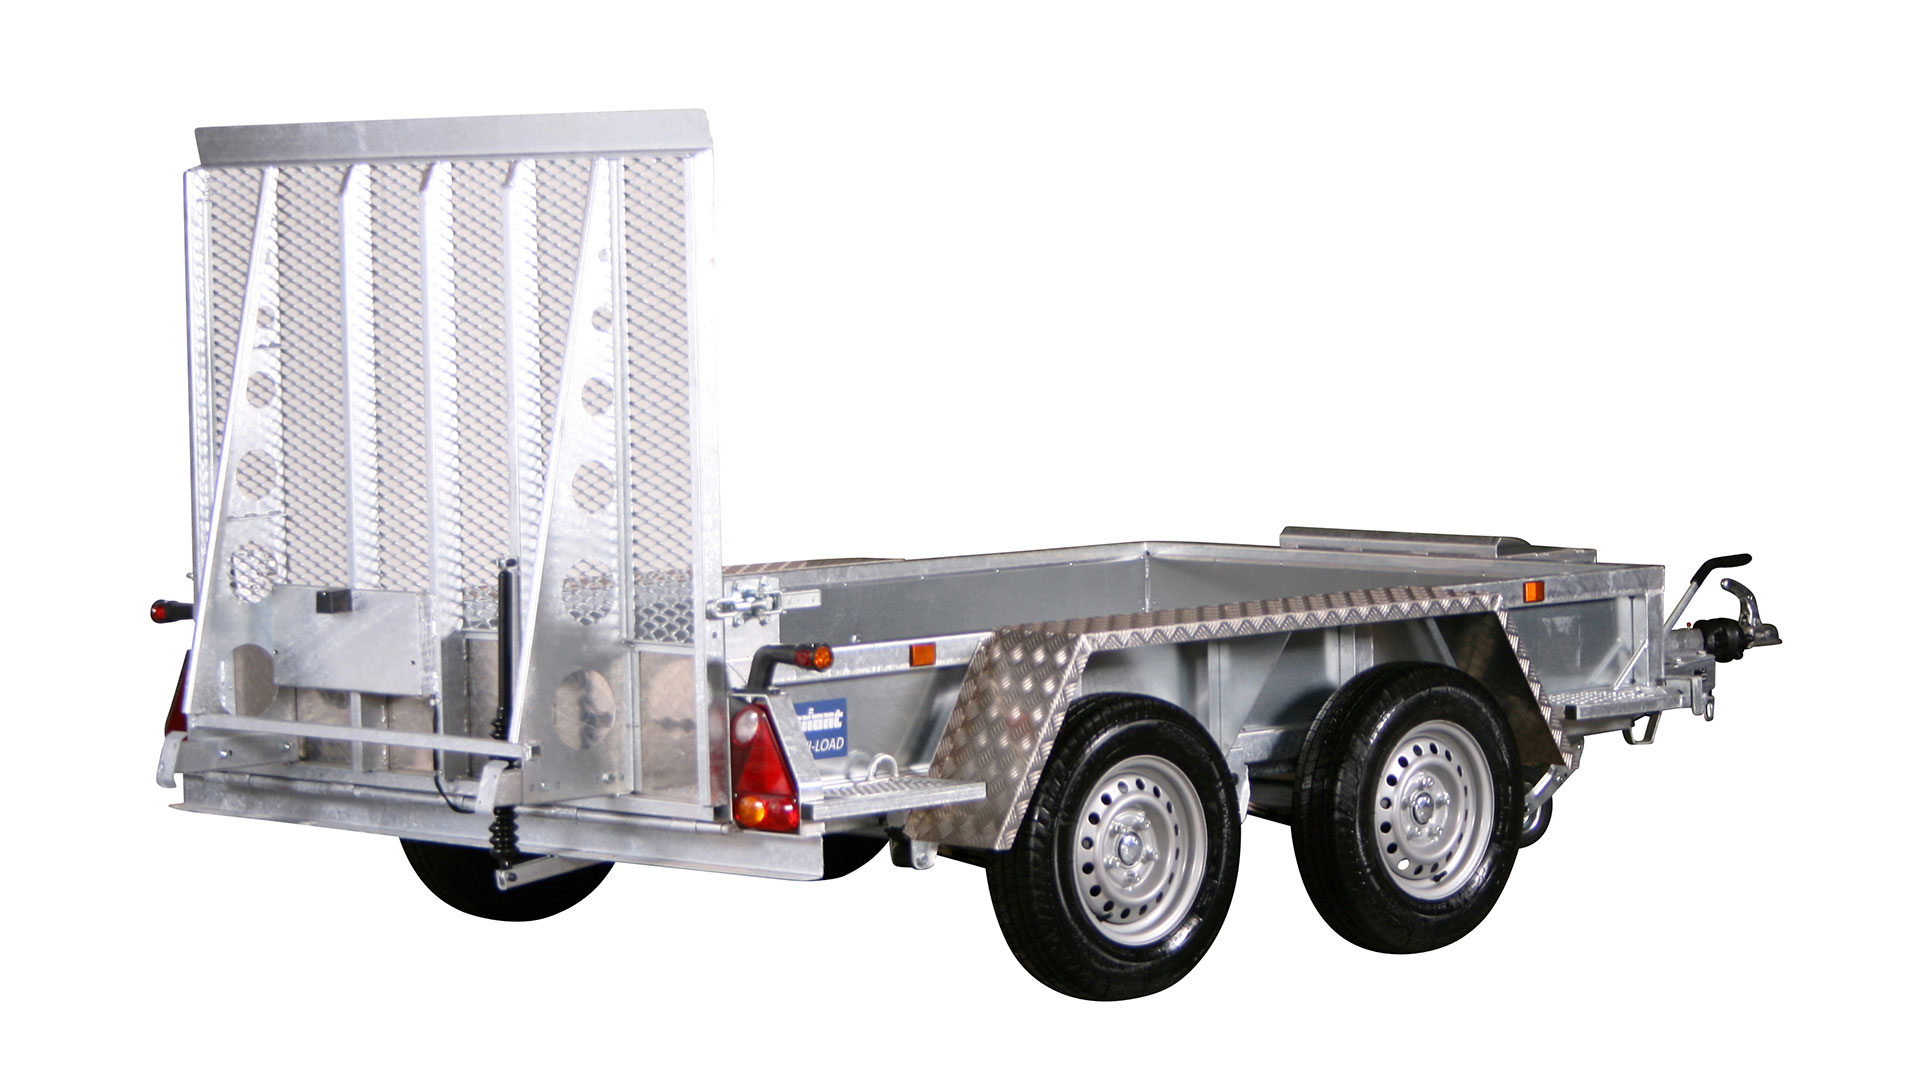 Variant PKW Anhänger Maschinen-Transporter / Minibagger-Anhänger 2000 kg, Ladefläche 2,6 x 1,50 m